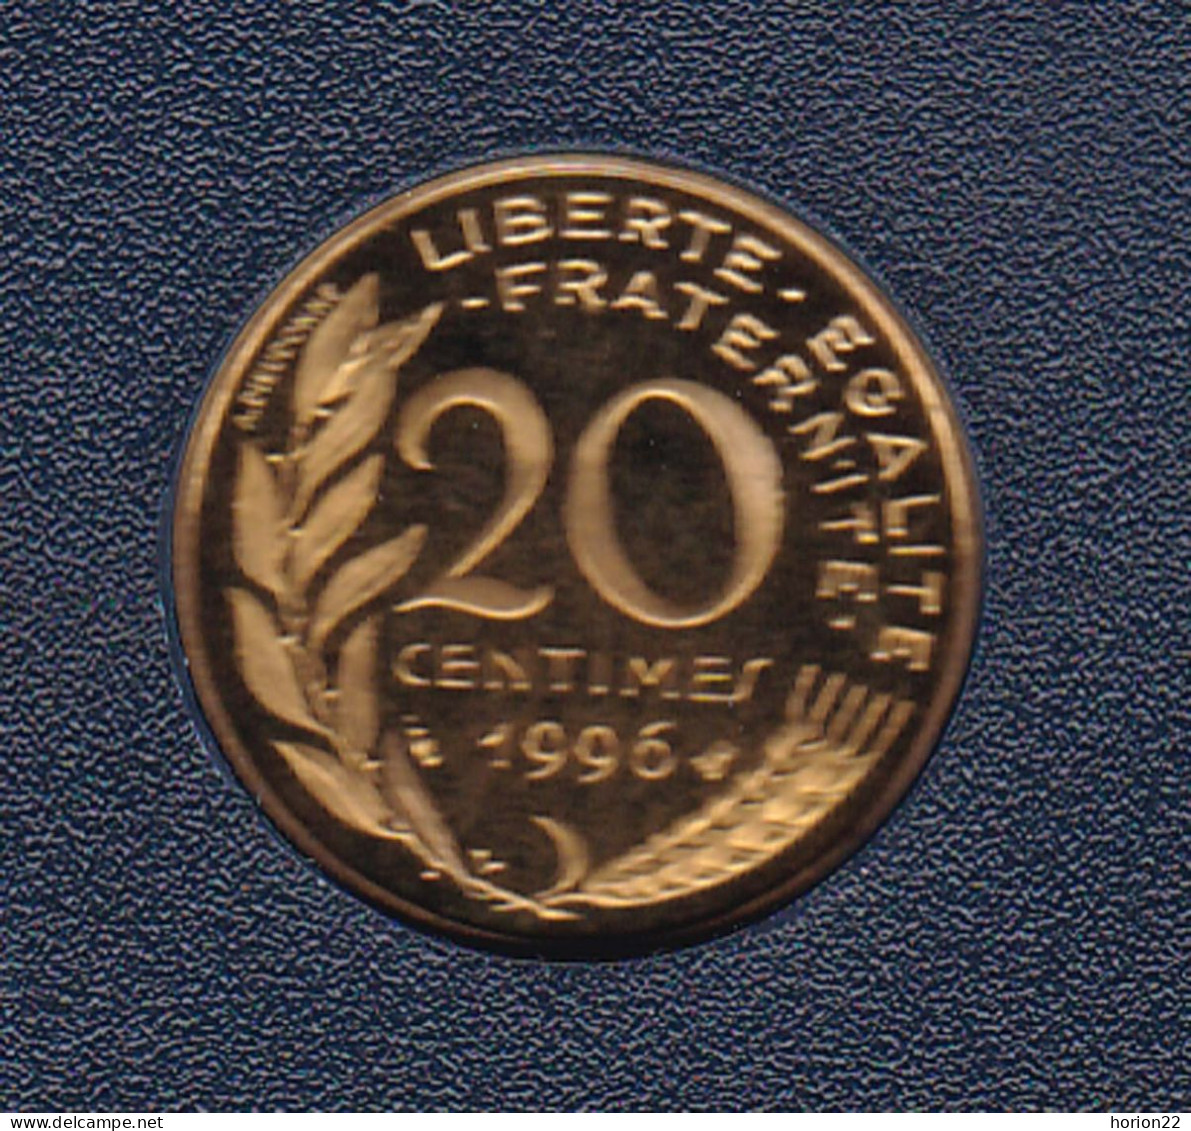 20 CENTIMES REPUBLIQUE 1996 ISSUE DU COFFRET BE - 20 Centimes